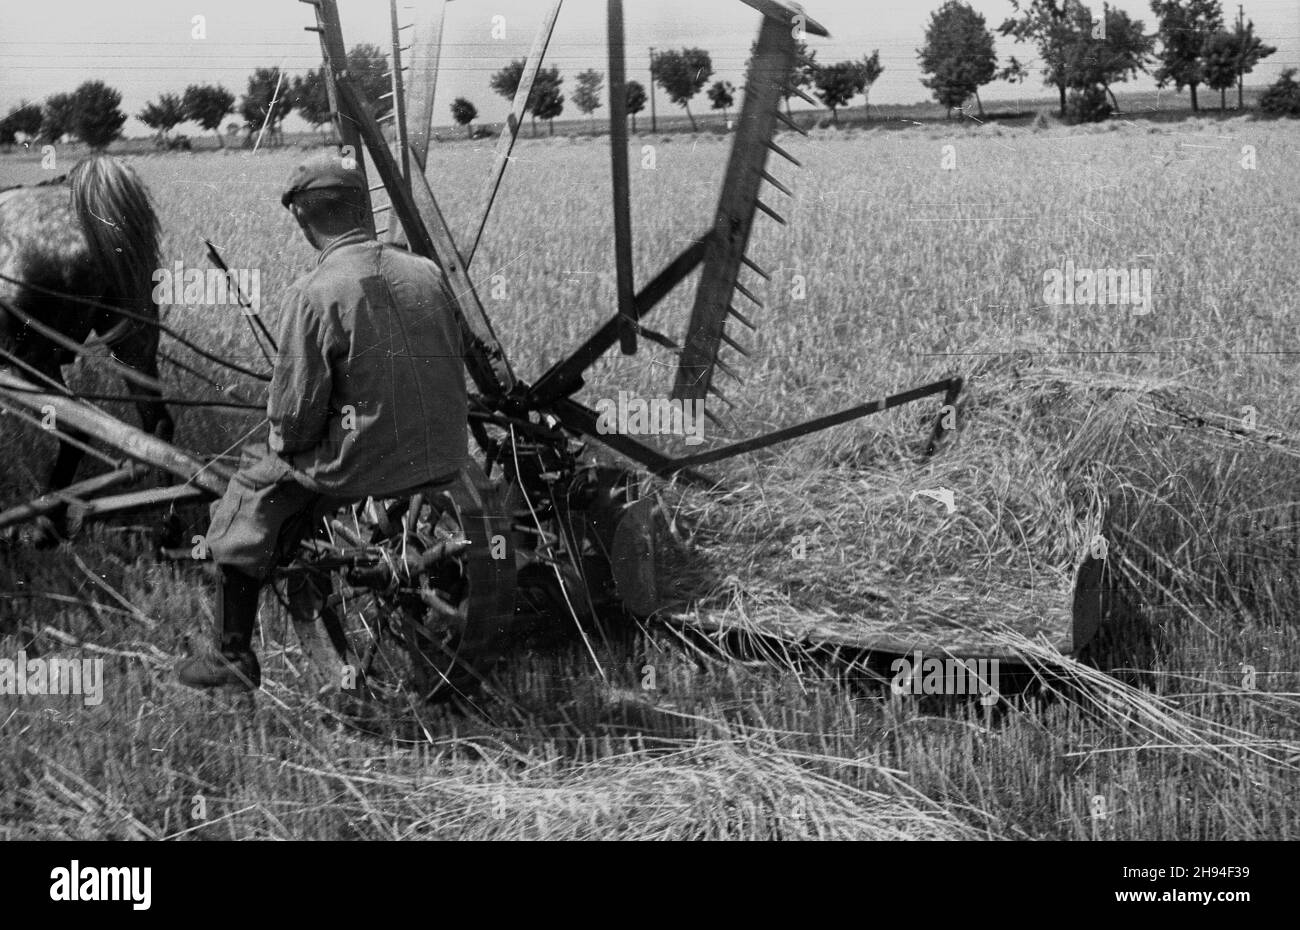 1947-07. Prace ¿niwne. Nz. rolnik kosi zbo¿e.  Dok³adny dzieñ wydarzenia nieustalony.  bk/ak  PAP      July, 1947. Harvest. Pictured: a farmer reaping corn.  bk/ak  PAP Stock Photo